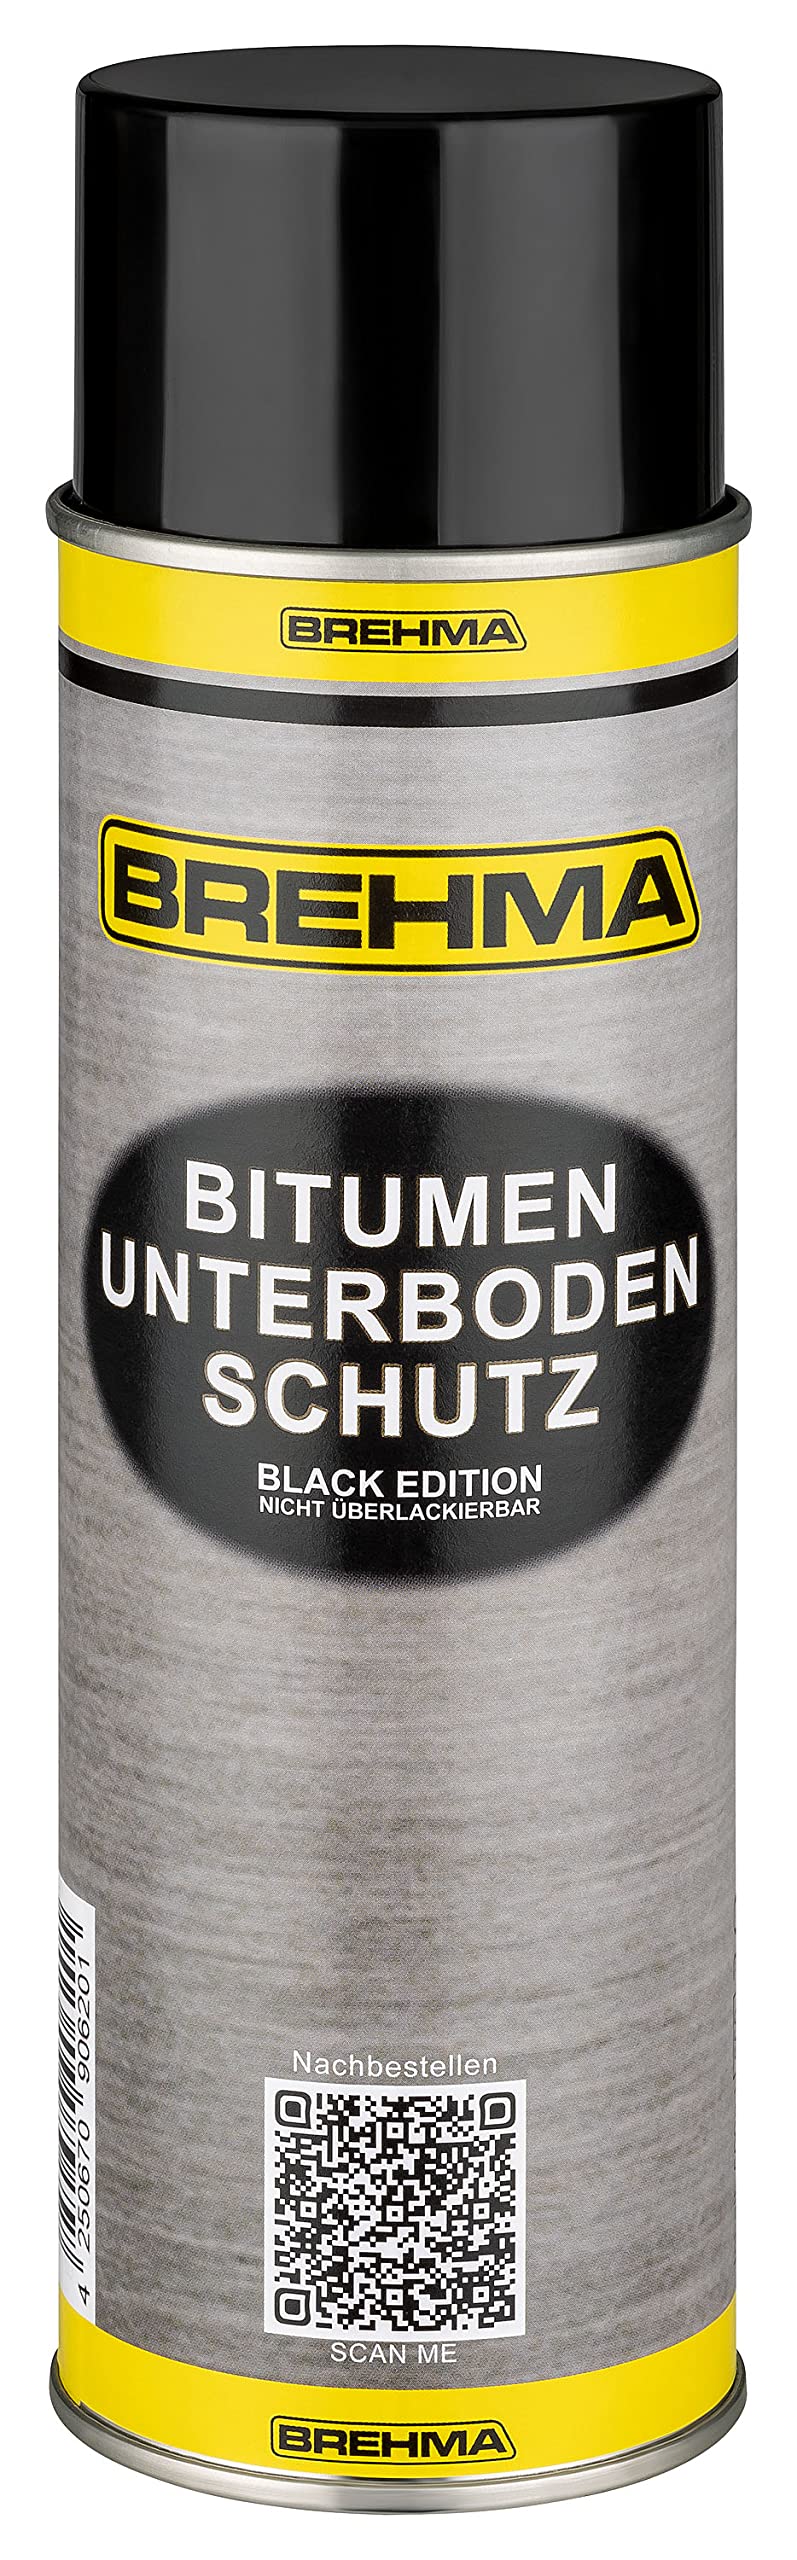 BREHMA Bitumen Unterbodenschutz Black Edition 500ml Steinschlagschutz Spray schwarz von BREHMA